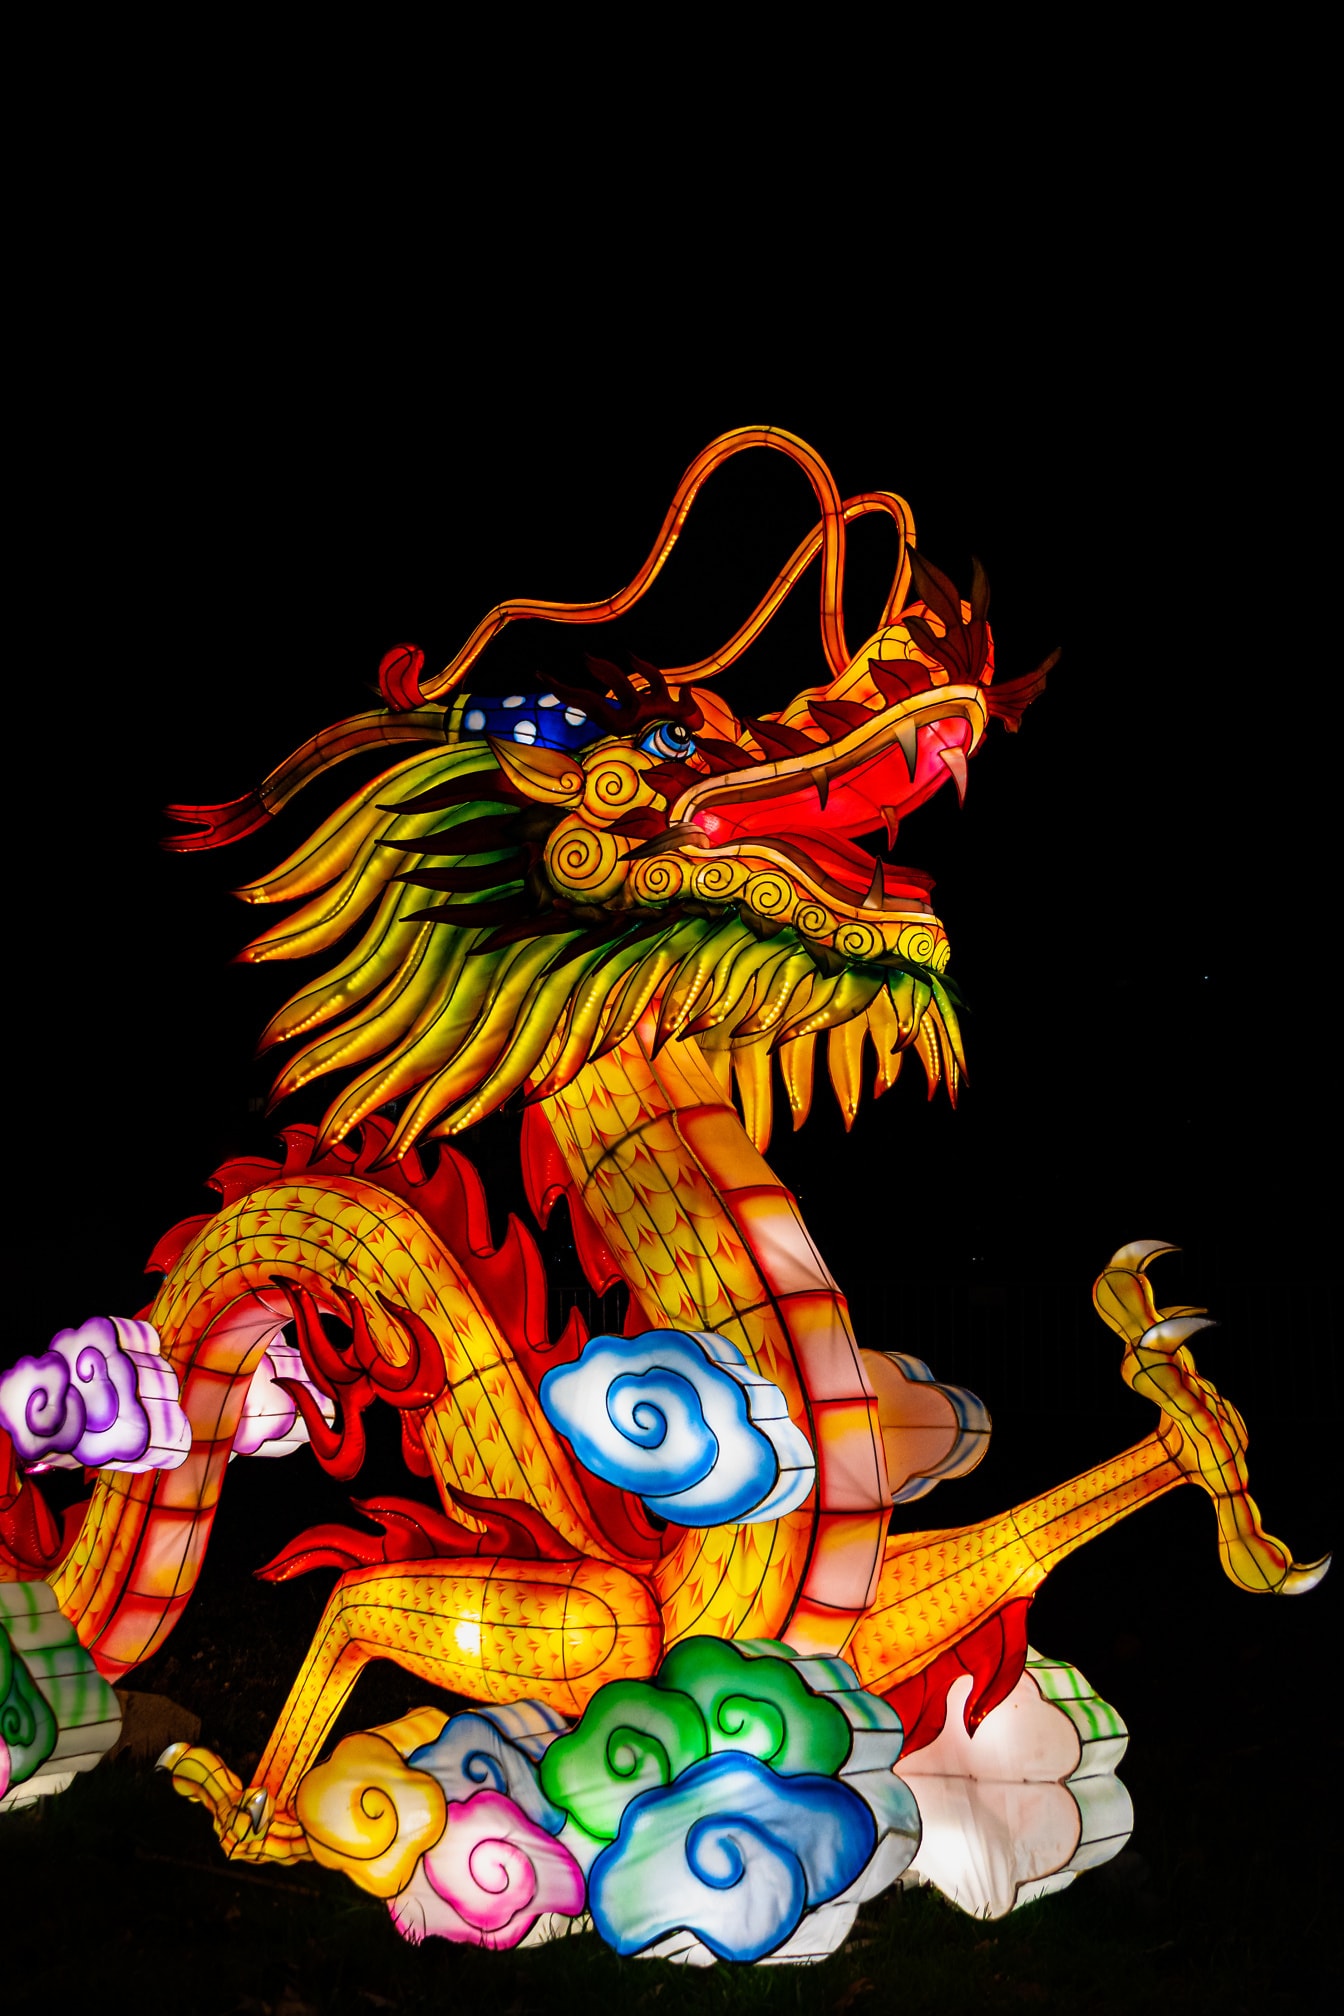 Китайский дракон, красочная скульптура на фестивале китайских фонарей, также известном как фестиваль Шанъюань